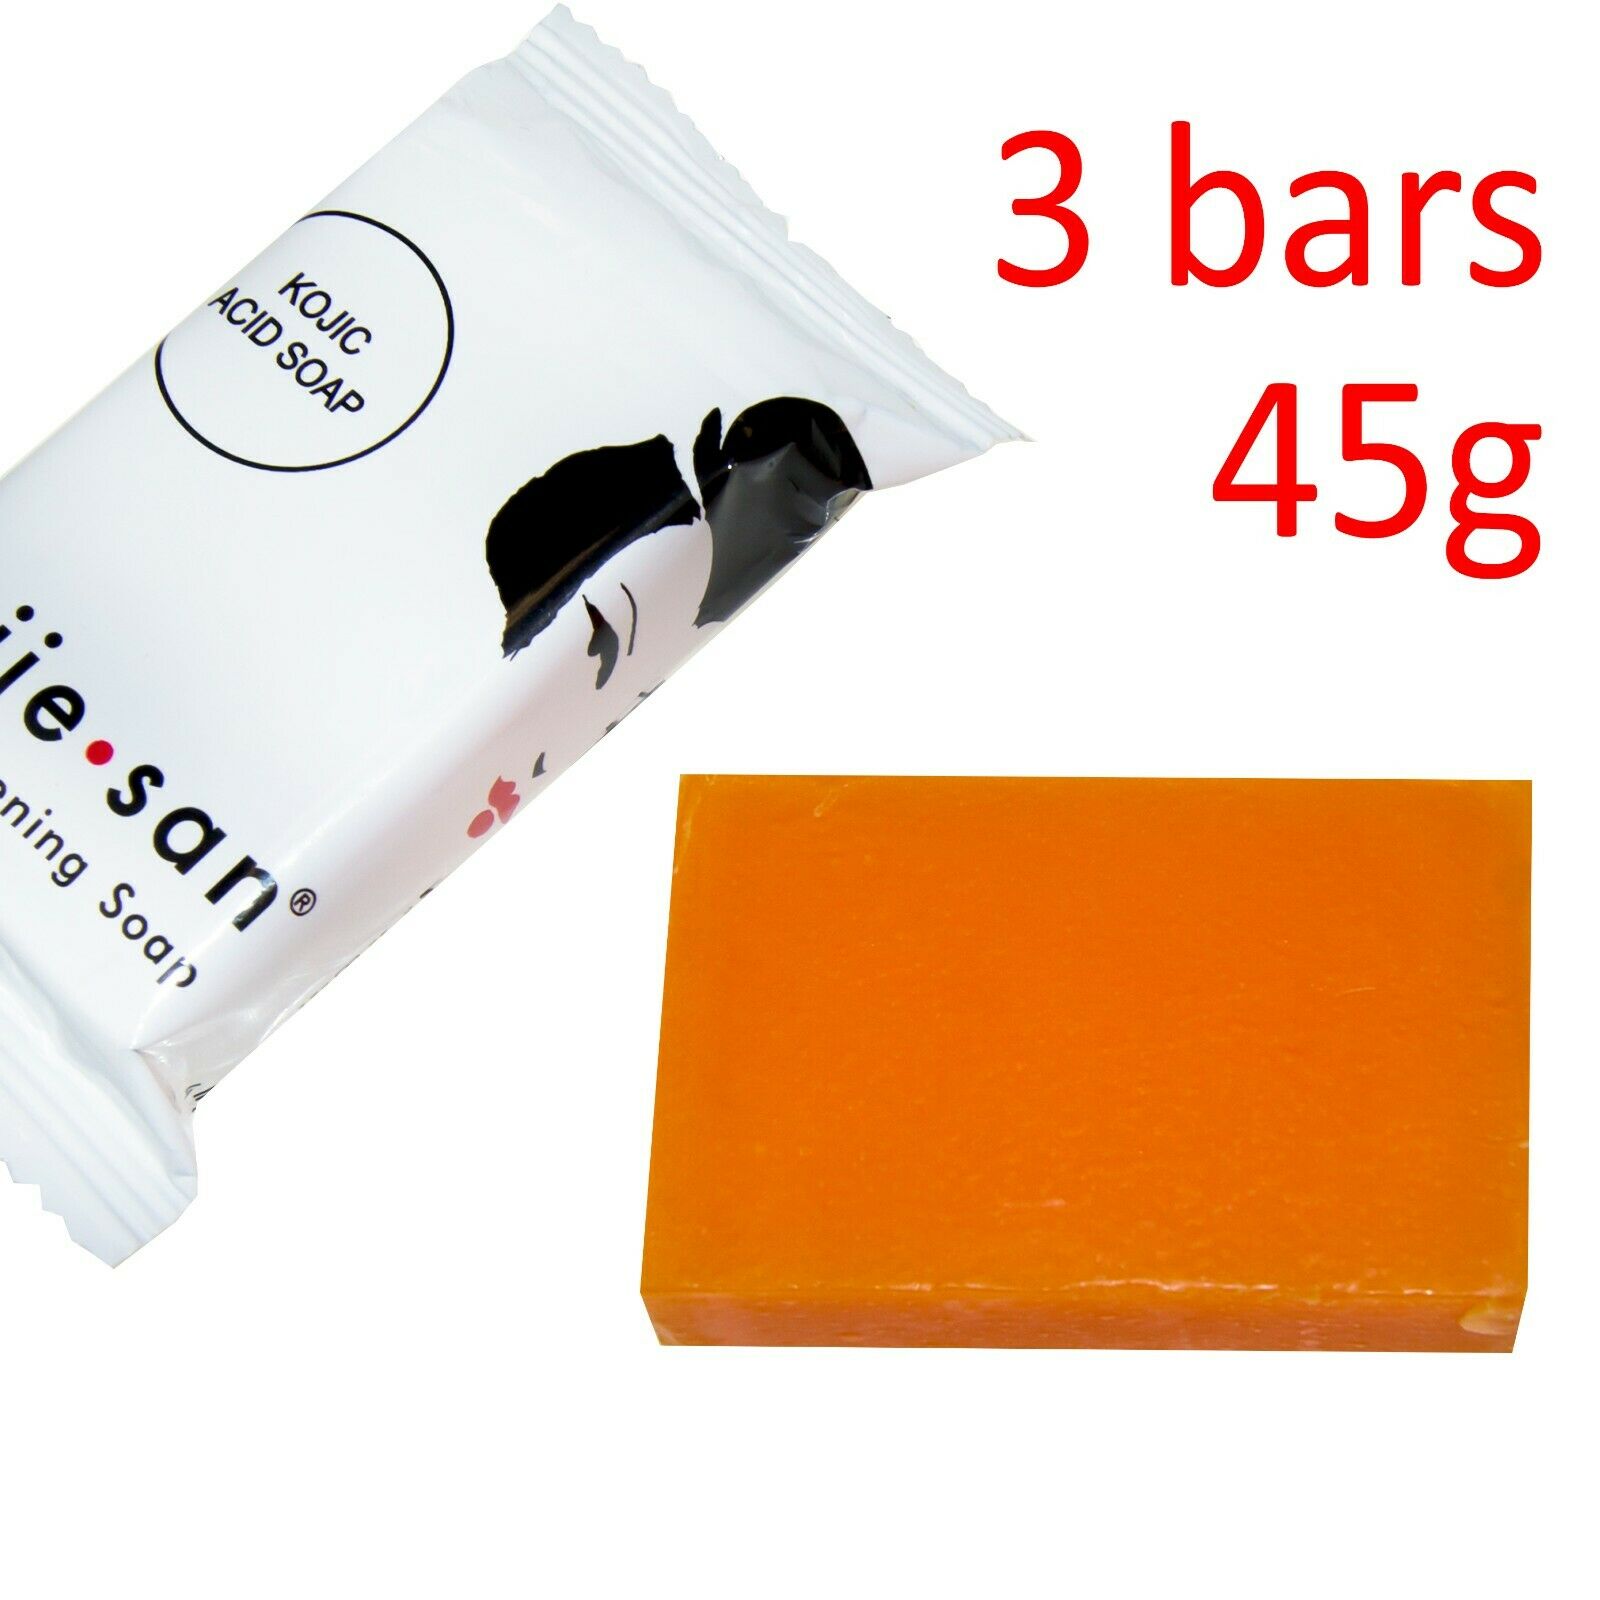 Kojie San Skin Lightening Kojic Acid Soap 3 Bars - 45g = 135g - Super Savings